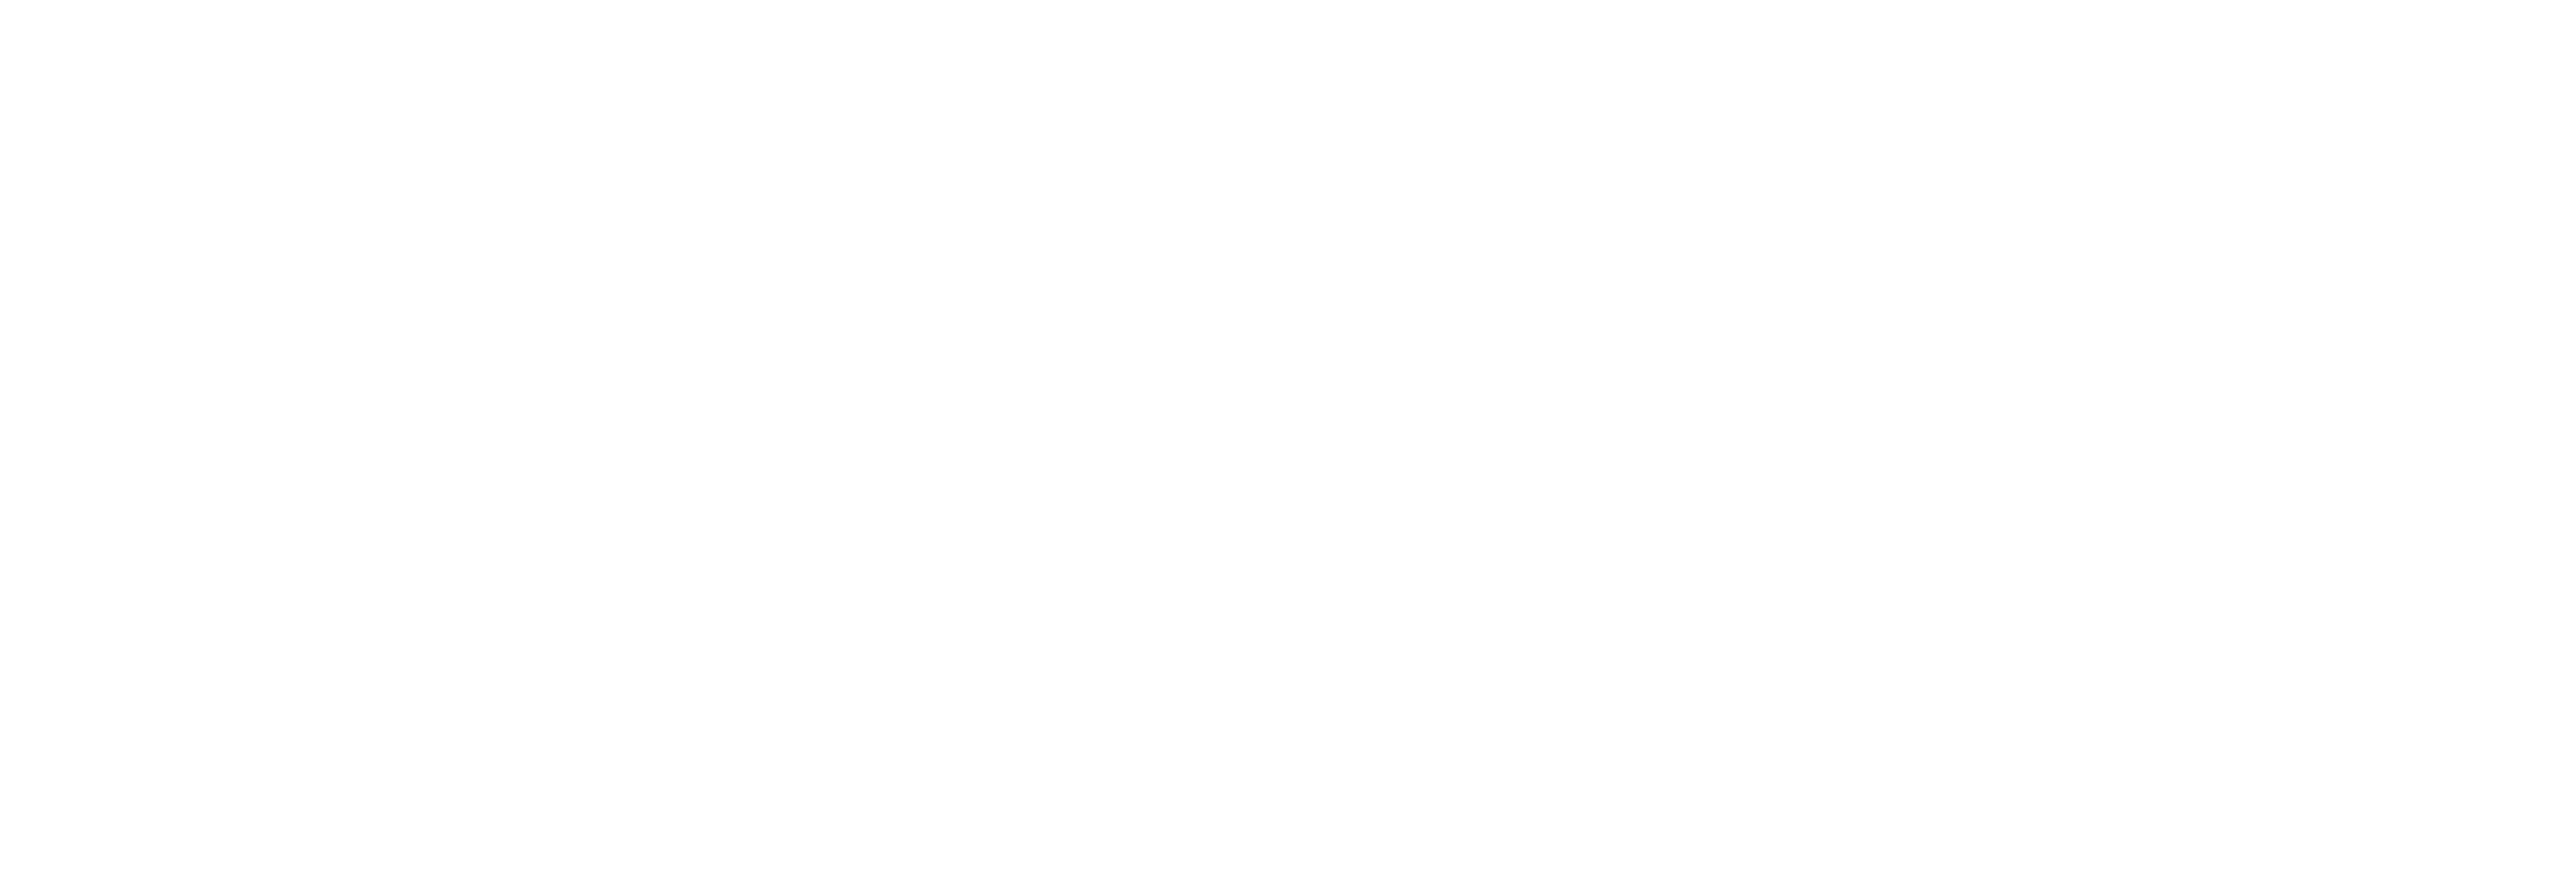 Fixx Salon